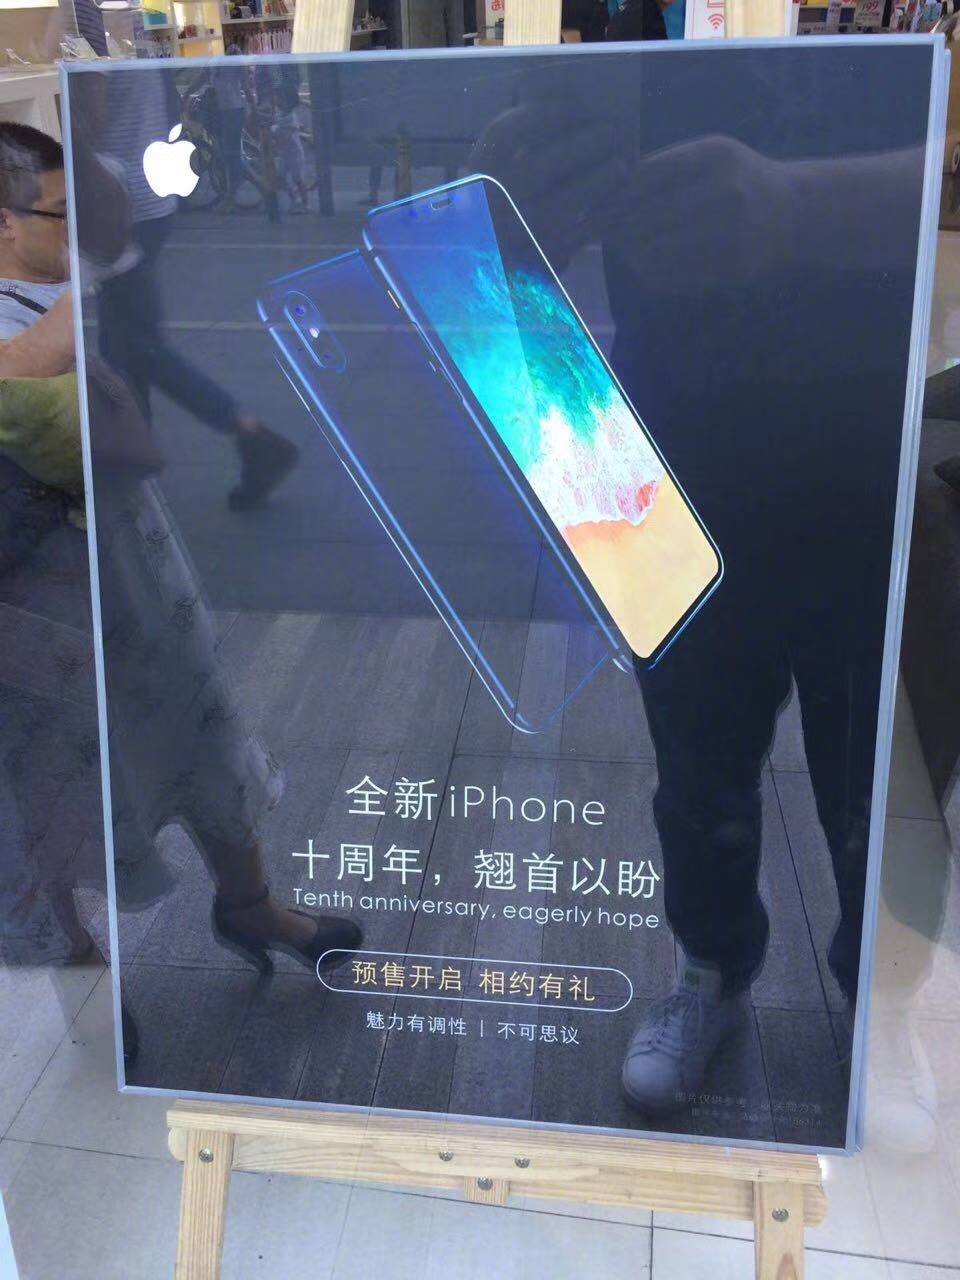 大陆手机商已开始挂出iPhone8宣传海报，还开放预购服务？！